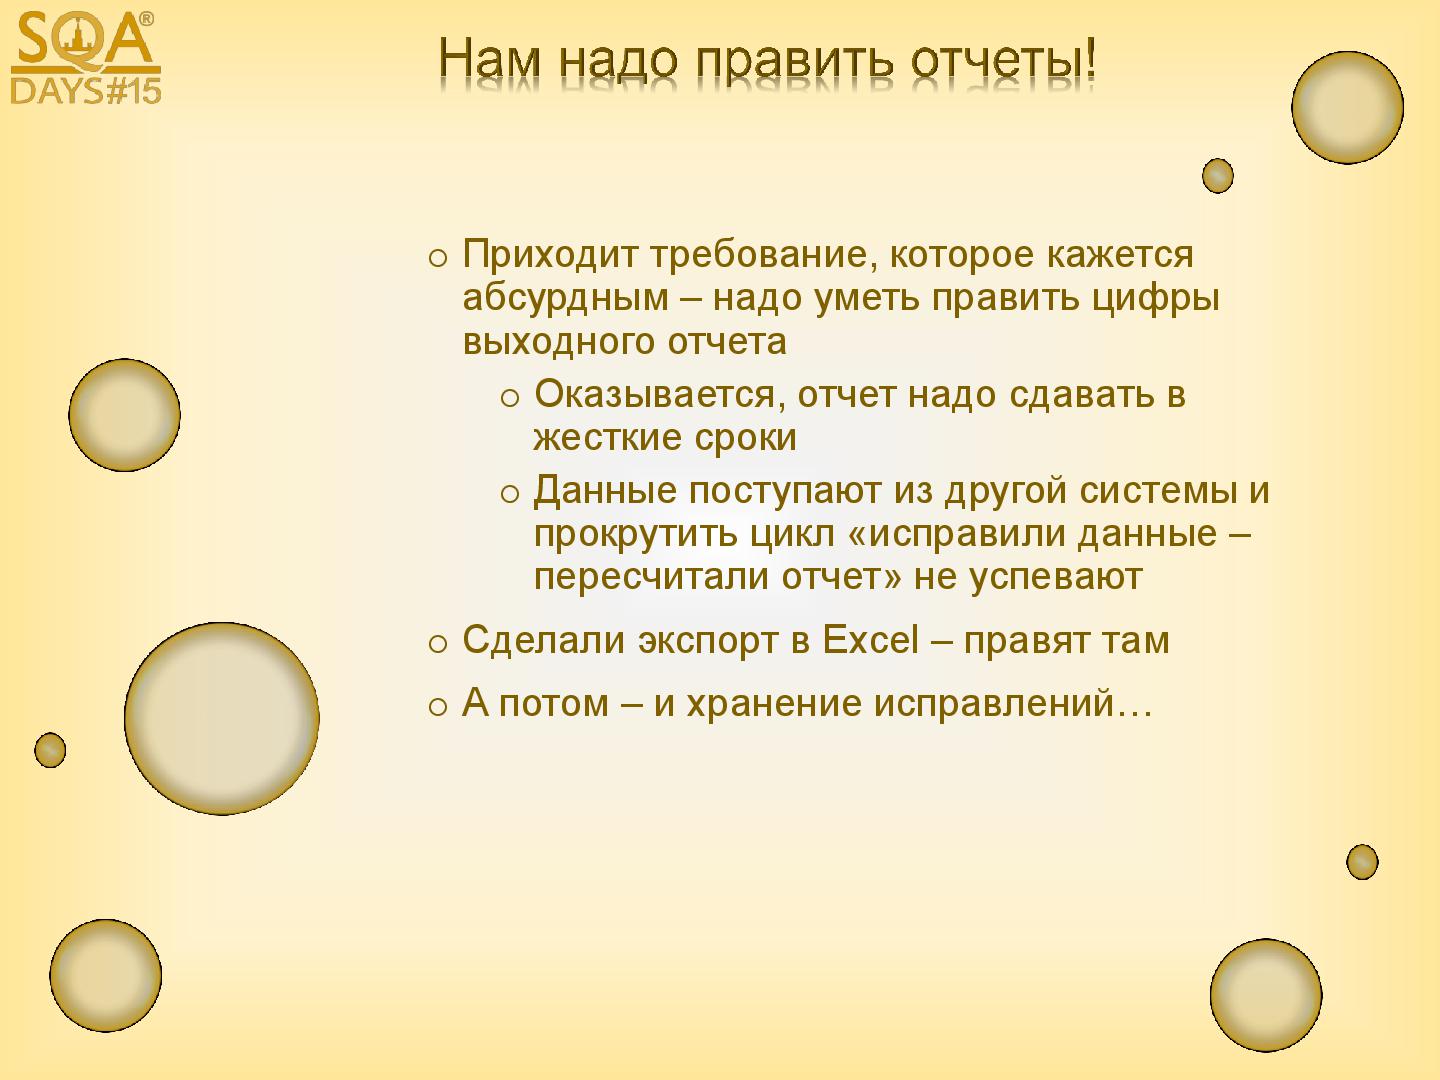 Файл:You-and-Customer-Tsepkov-Myasnikov-Uzhevko-sqadays-15.pdf